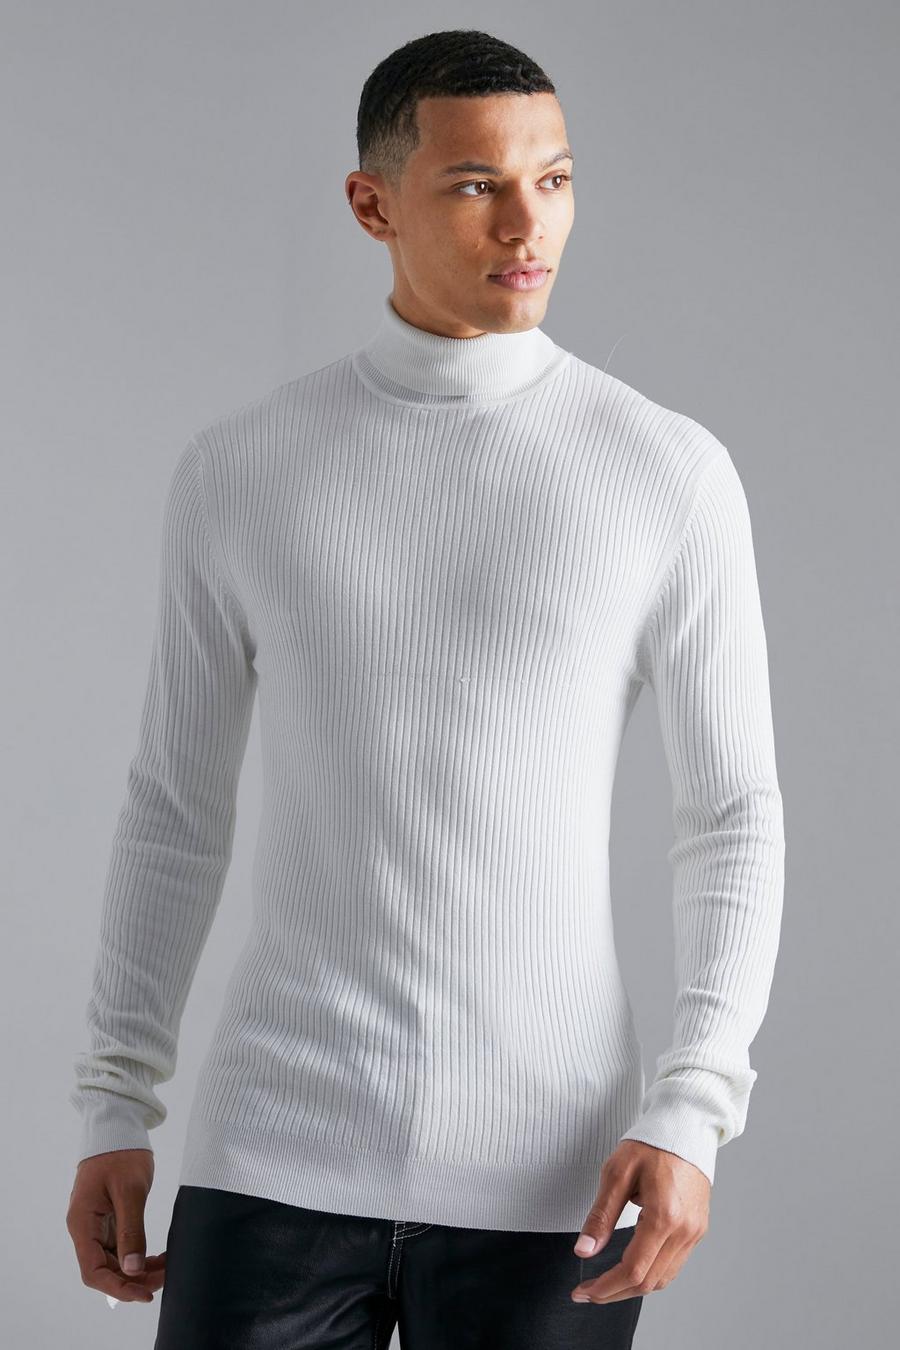 לבן white סוודר ארוג בגזרה צמודה מבד ממוחזר עם צווארון נגלל, לגברים גבוהים